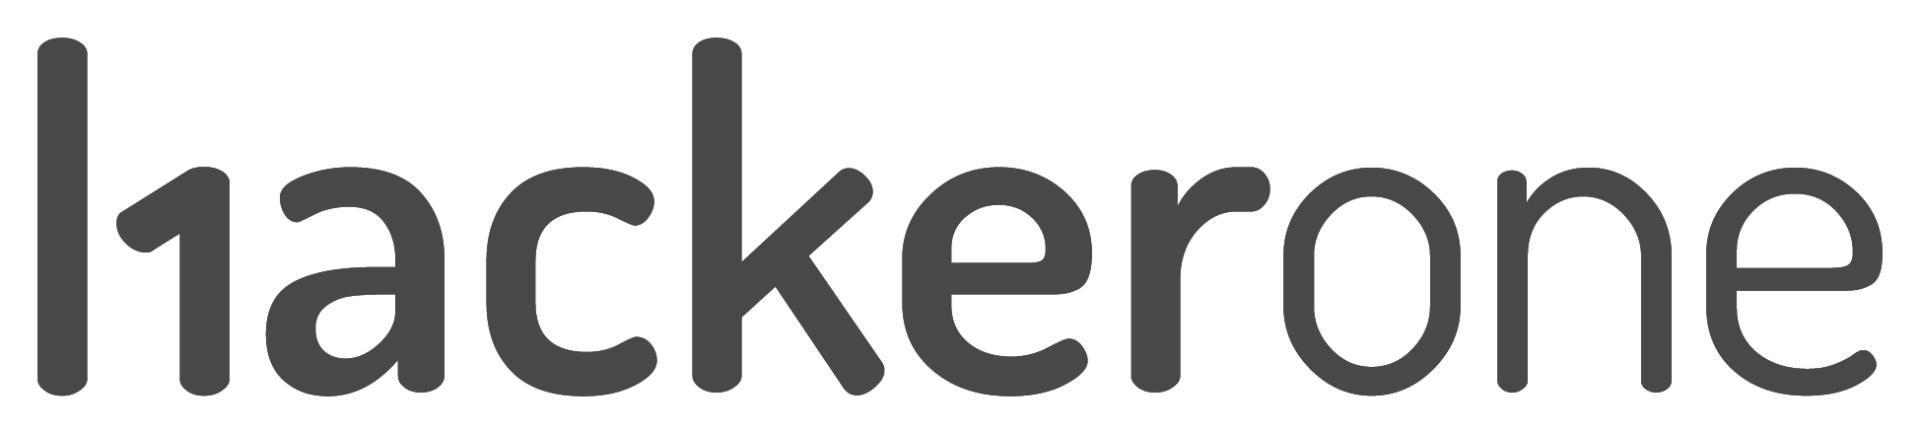 Hacker 1 Logo